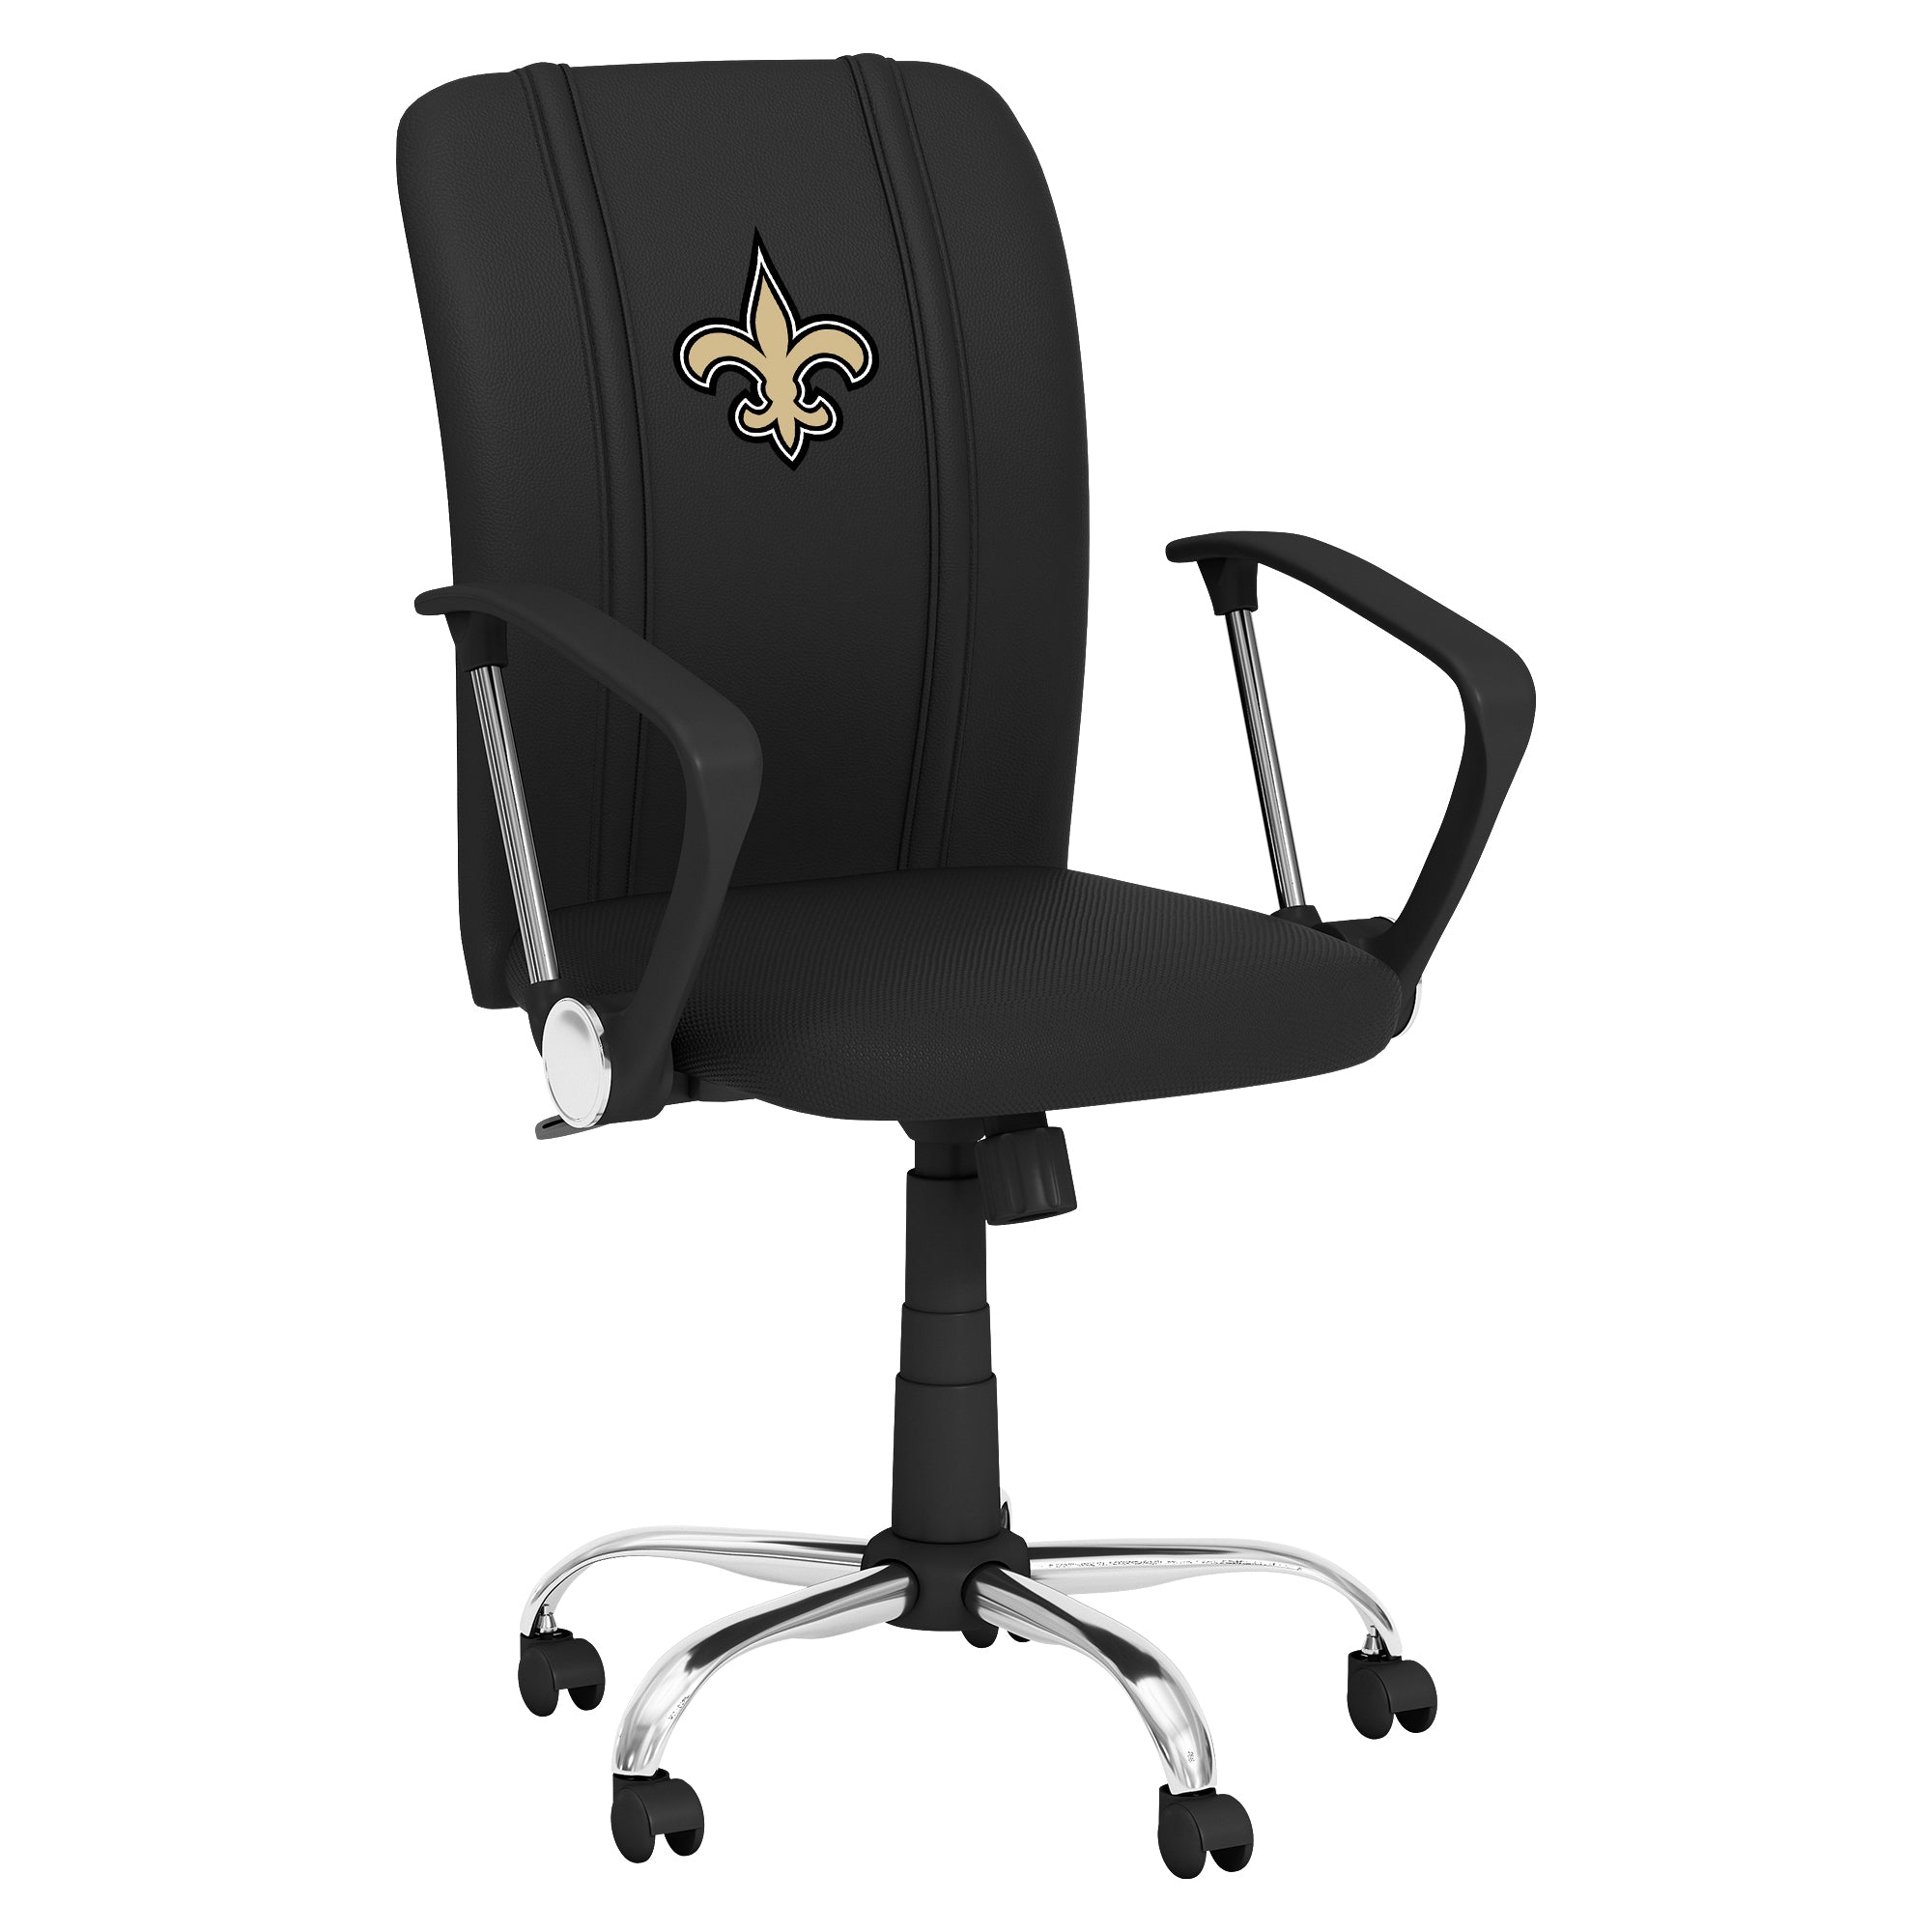 New Orleans Saints Curve Task Chair